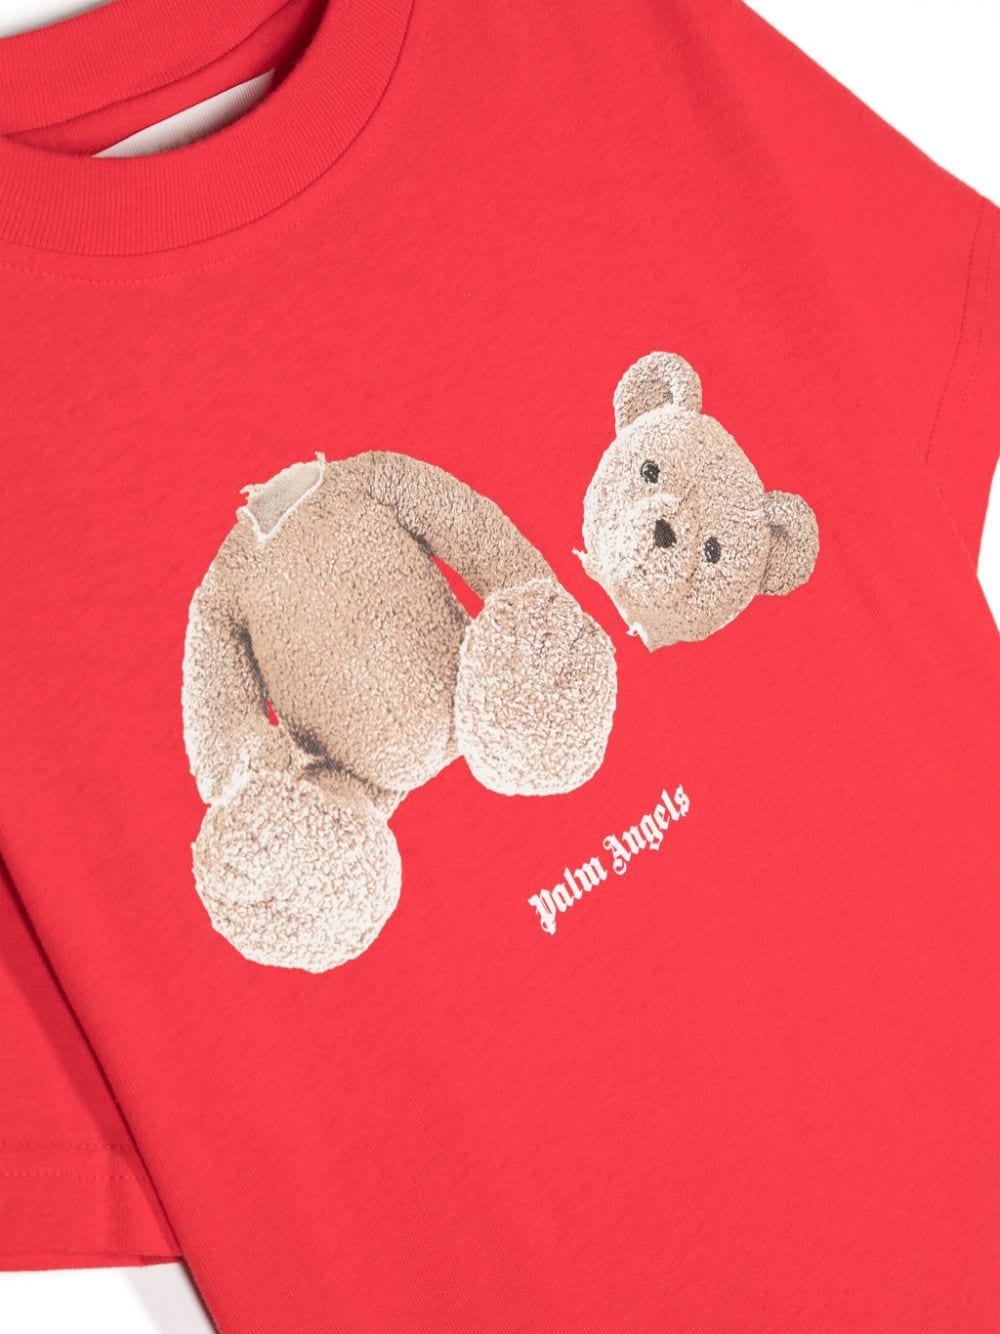 Palm Angels Kids Katoenen T-shirt met teddybeerprint Rood